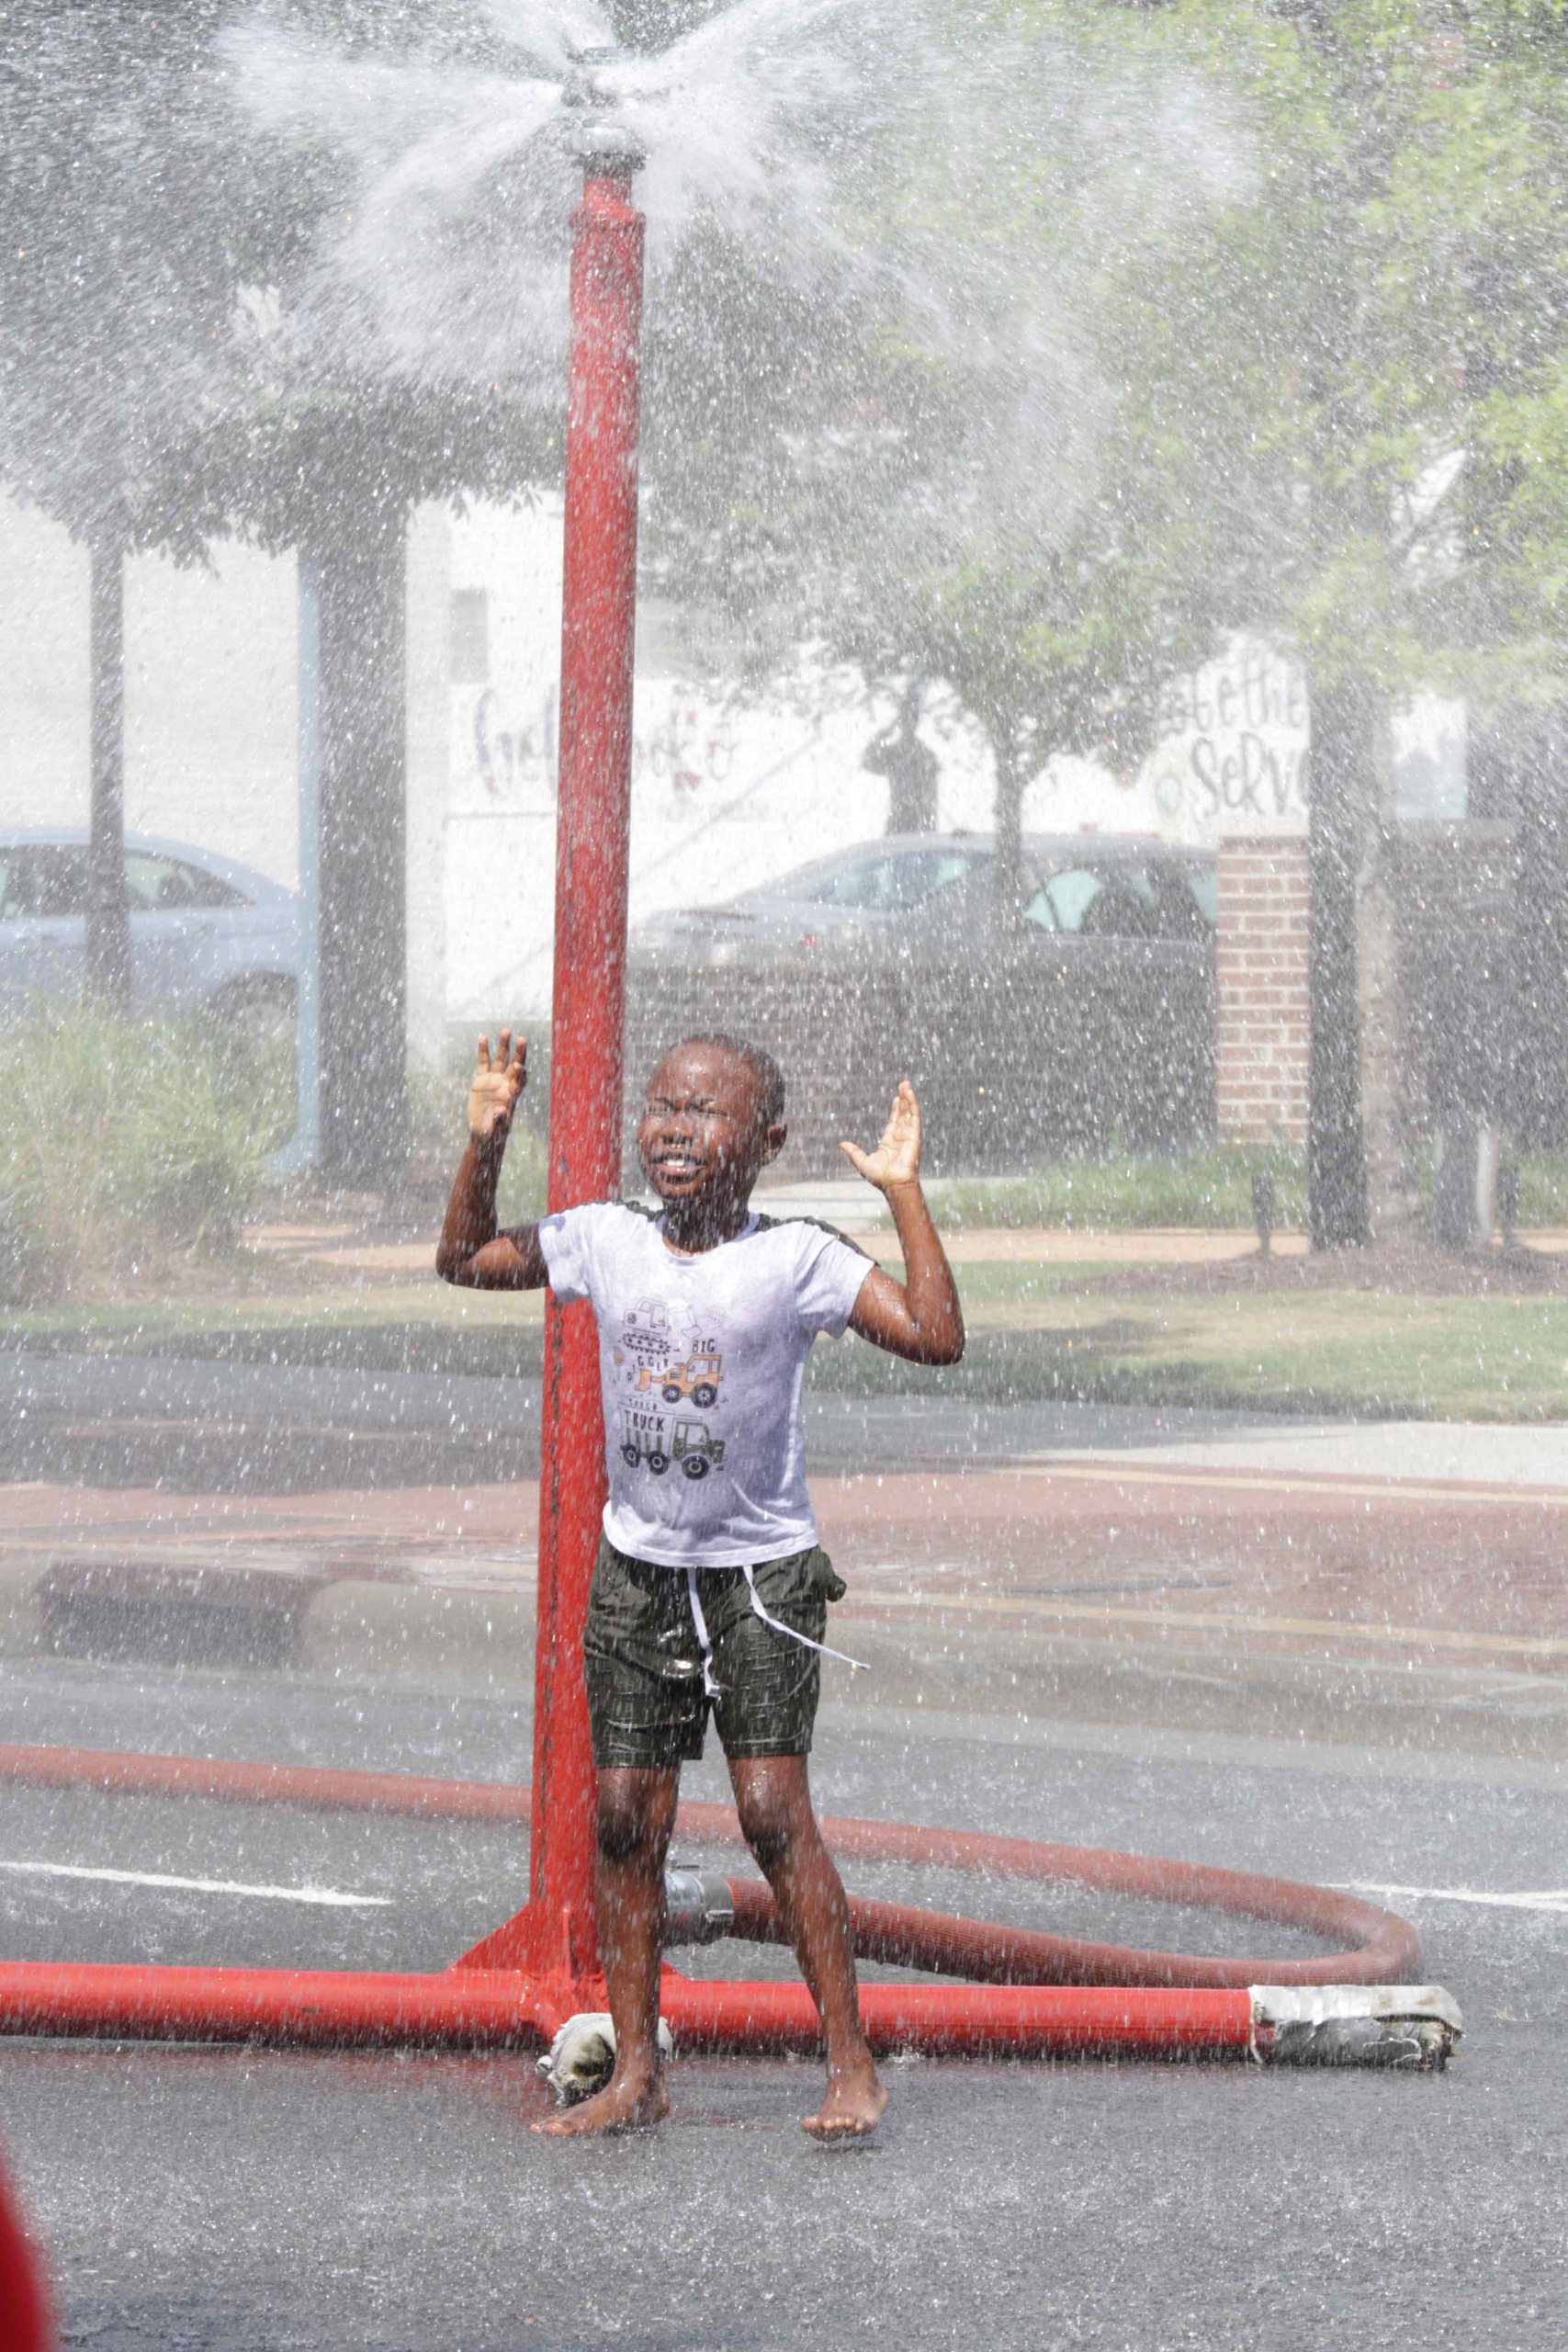 Kids Cool off During Sprinkler Days